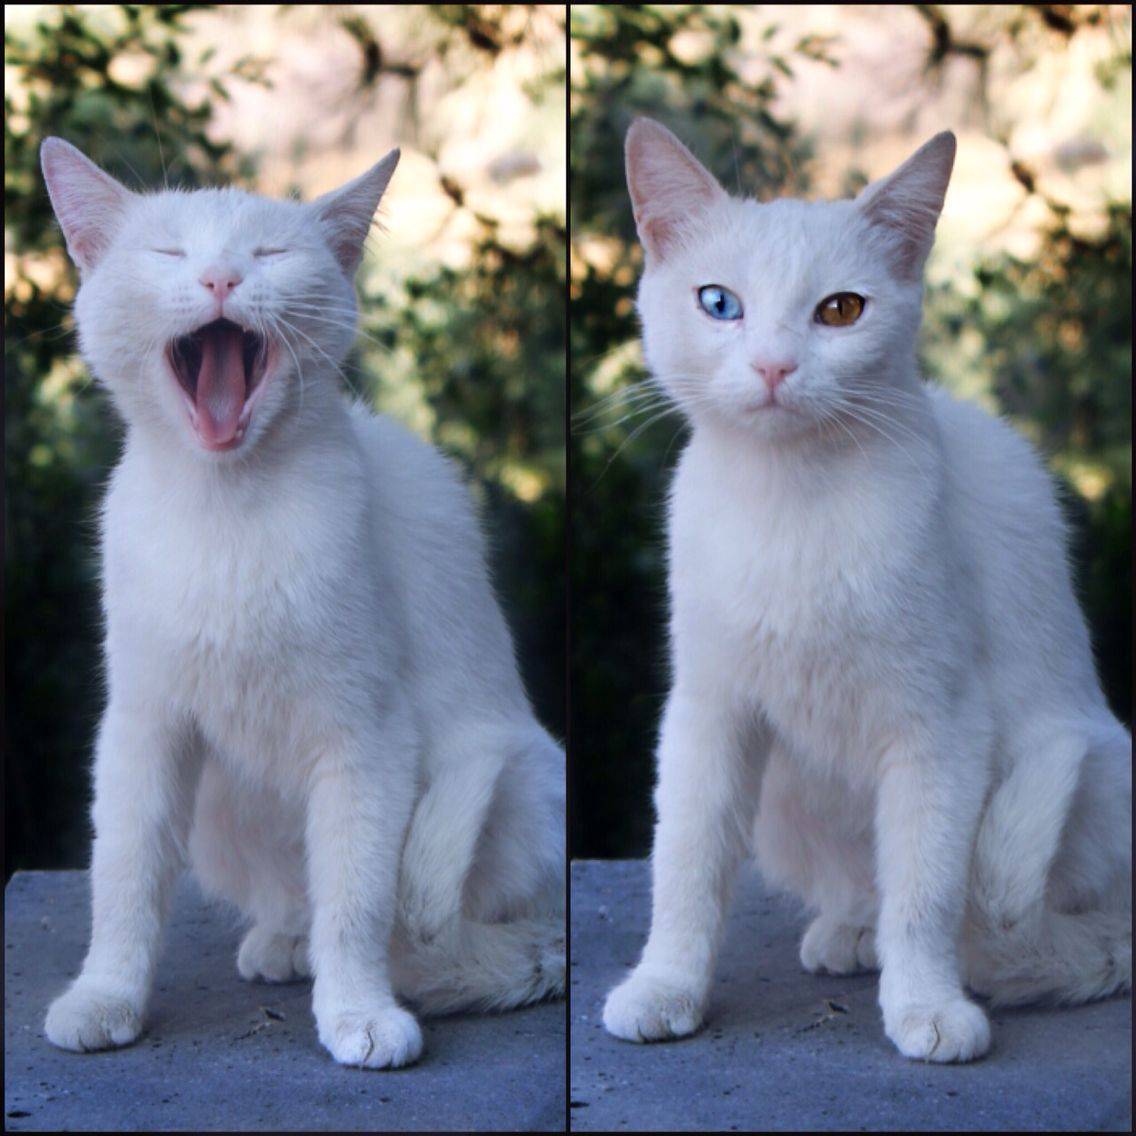 Турецкая ангора: описание внешнего вида и характера породы кошек, уход и содержание, кормление